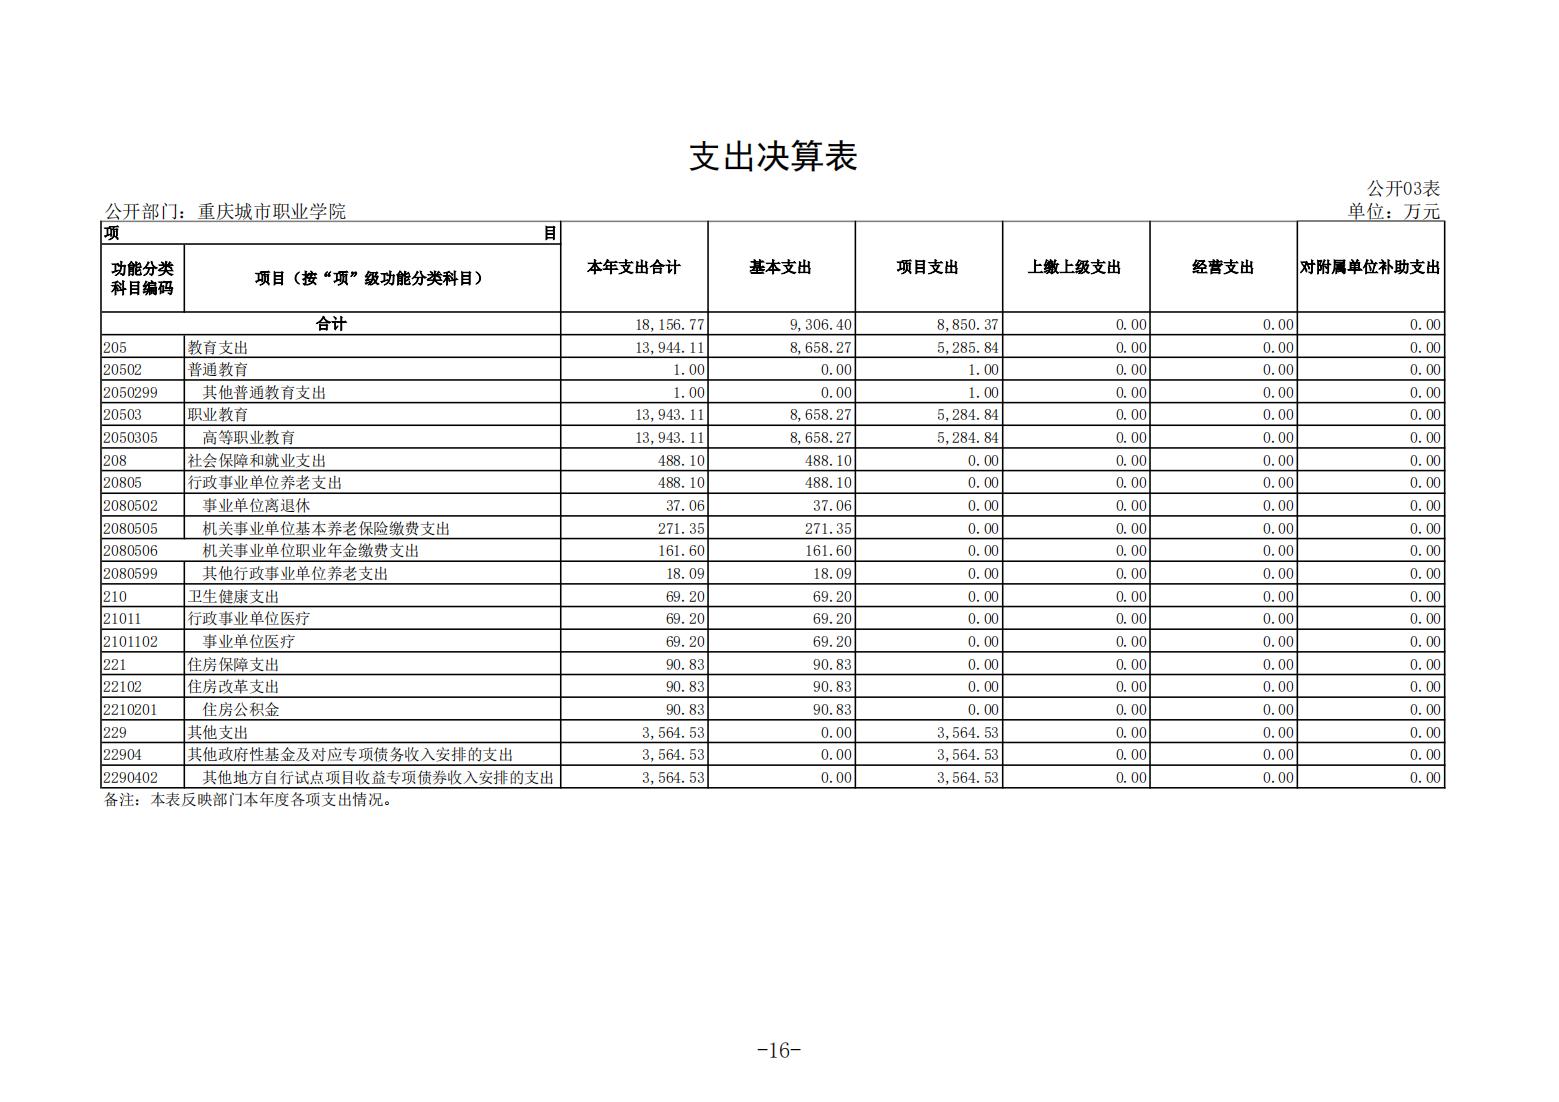 重庆城市职业学院2021年度部门决算情况说明_15.jpg